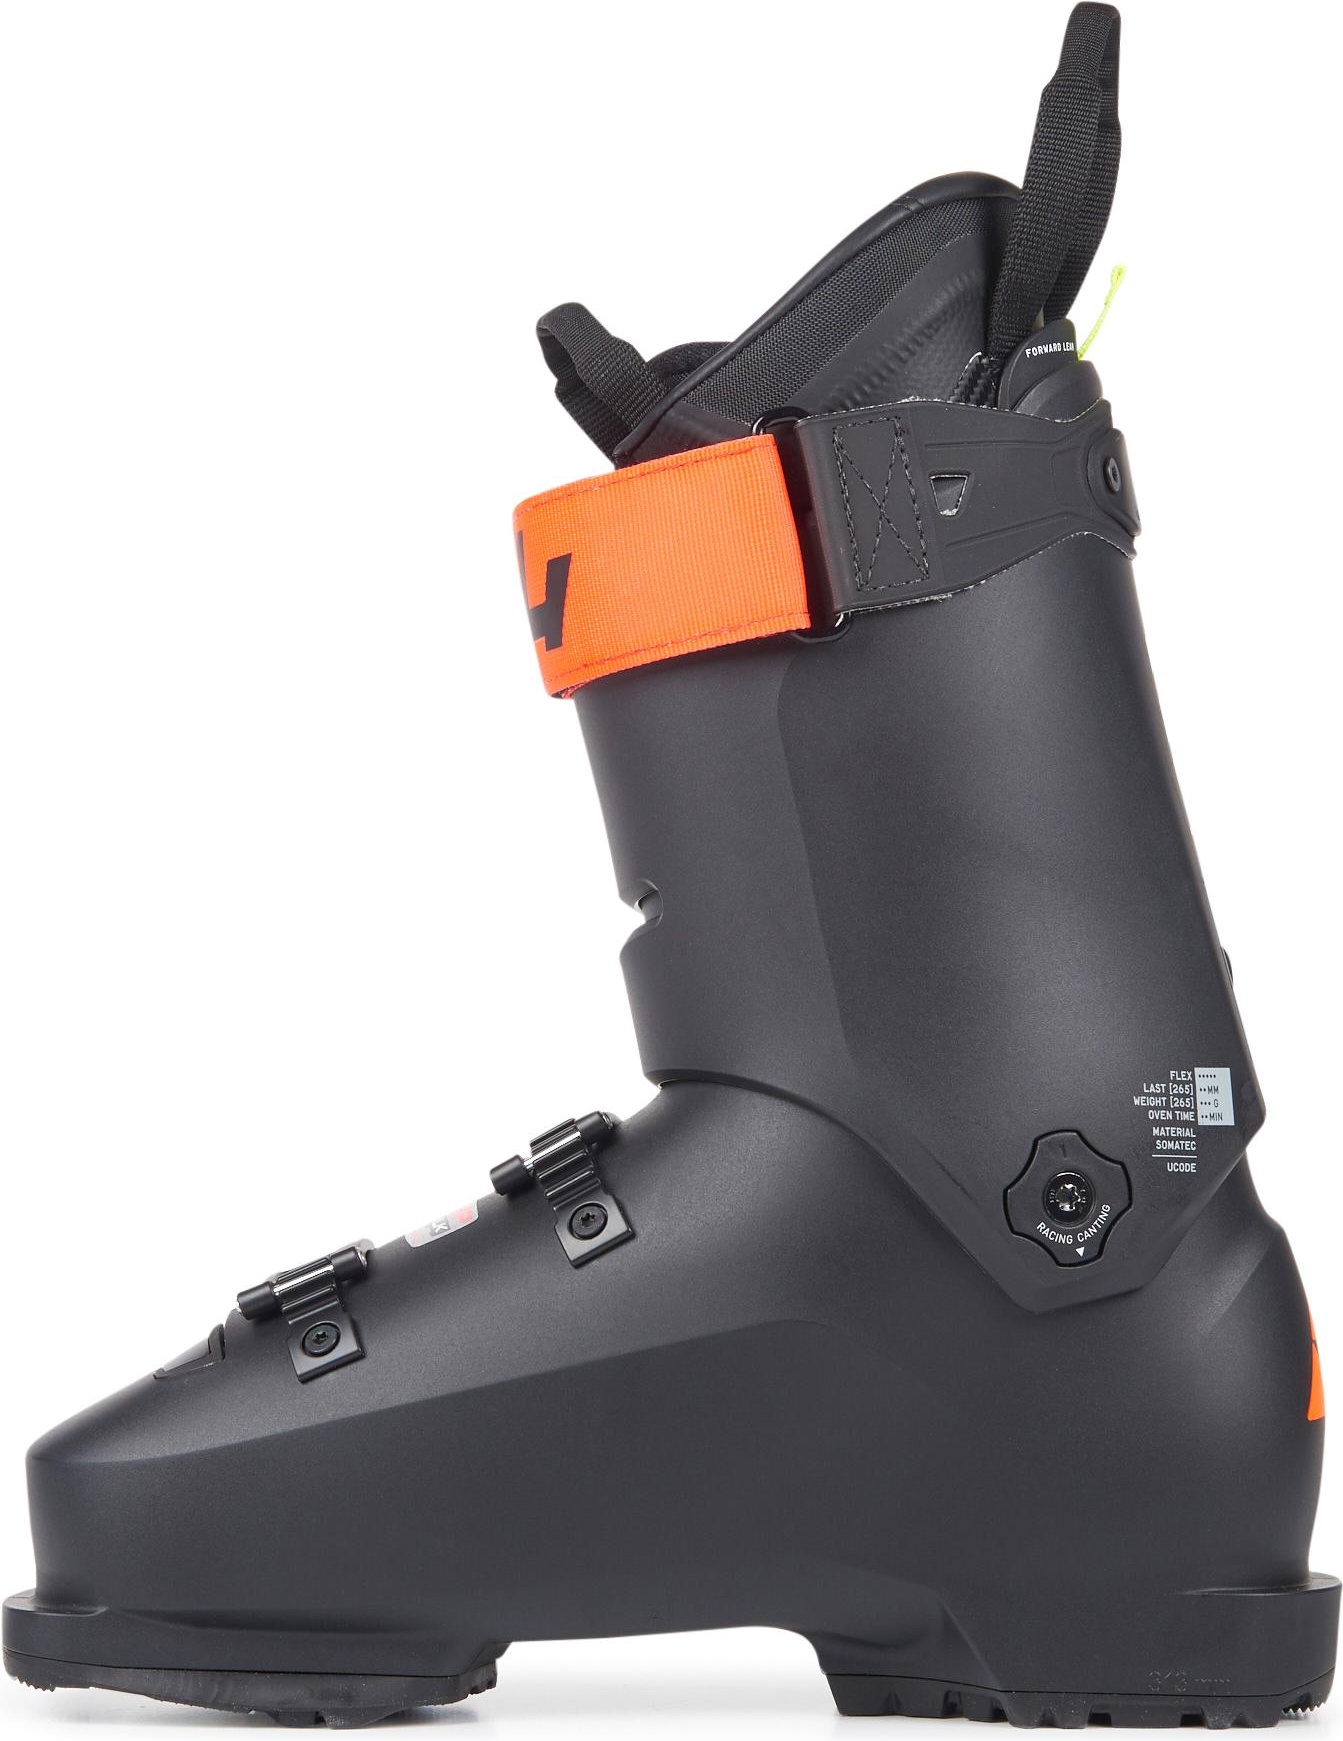 Горнолыжные ботинки Fischer Rc4 The Curv Gt 120 Vacuum Walk 2021, black/black, 26.5